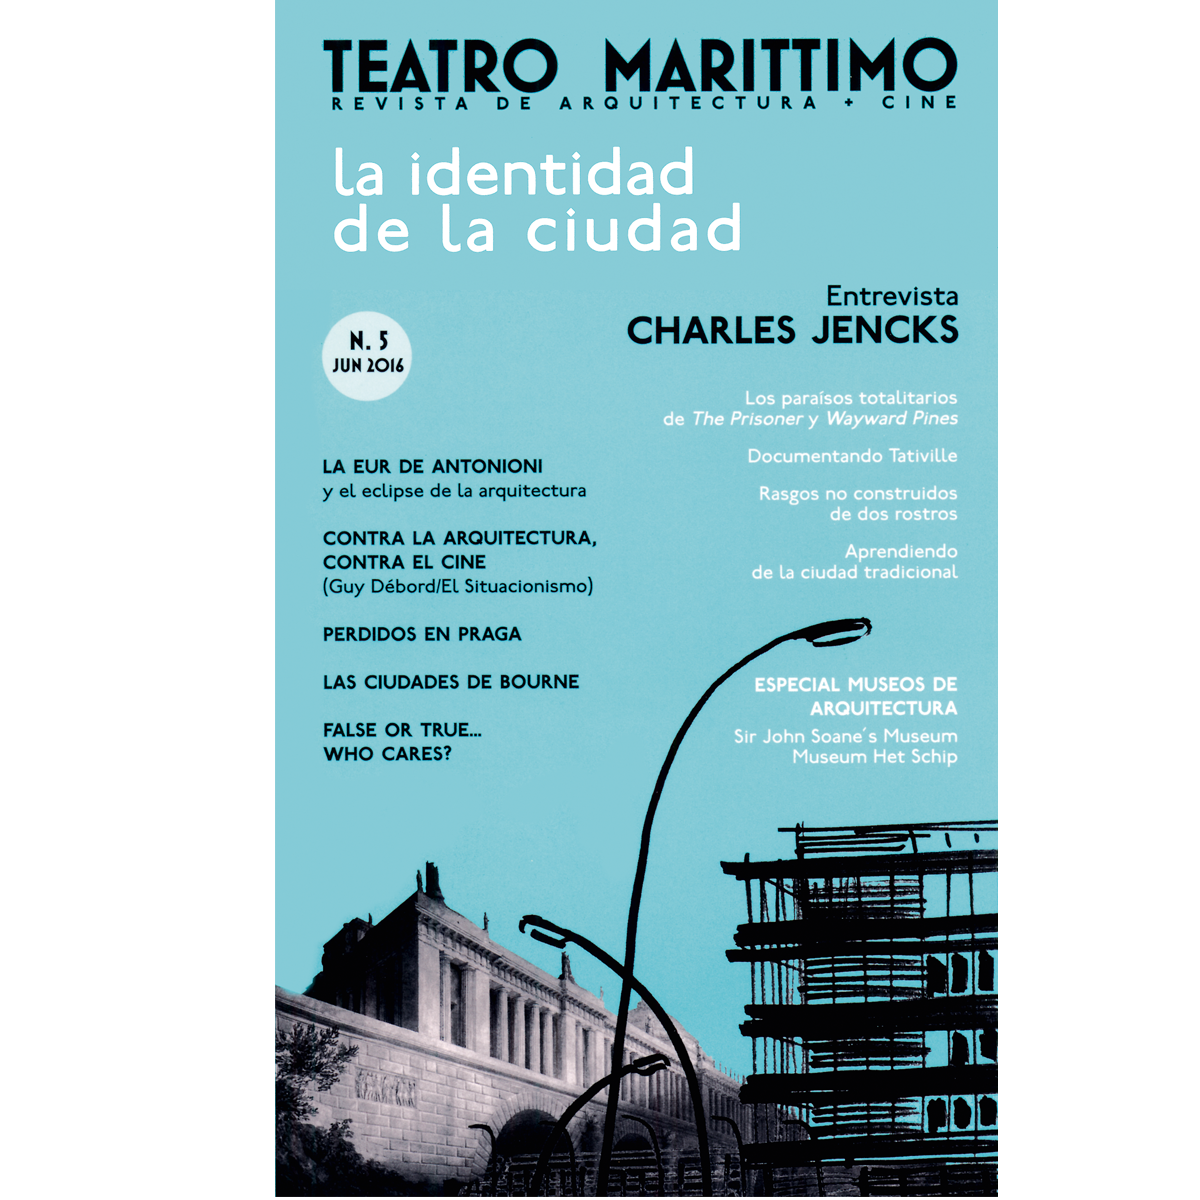 Teatro Marittimo: La identidad de la ciudad